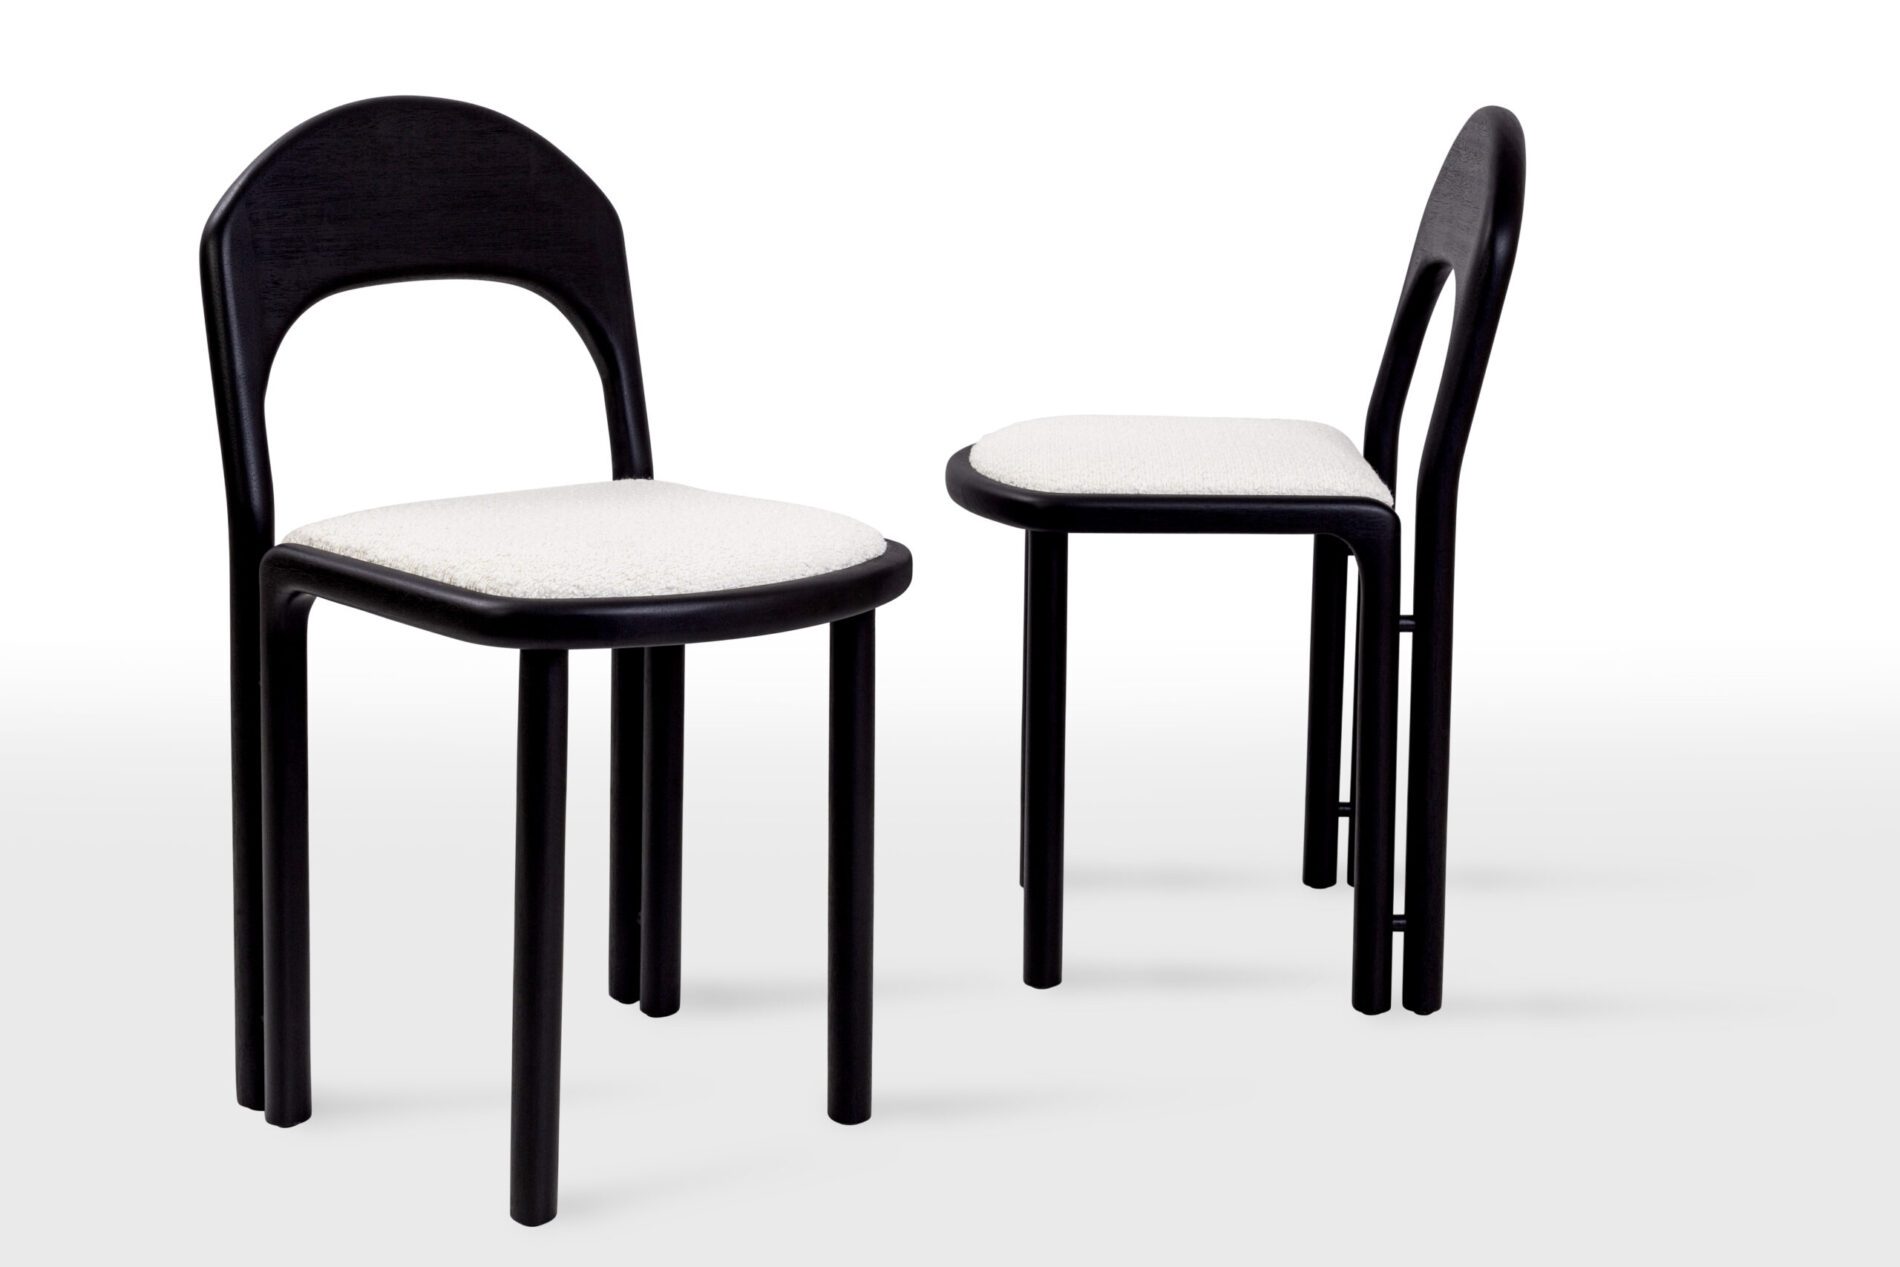 Cadeira Dueto é minimalista, tem curvas trabalhadas e toca minimamente o chão | Foto: Divulgação